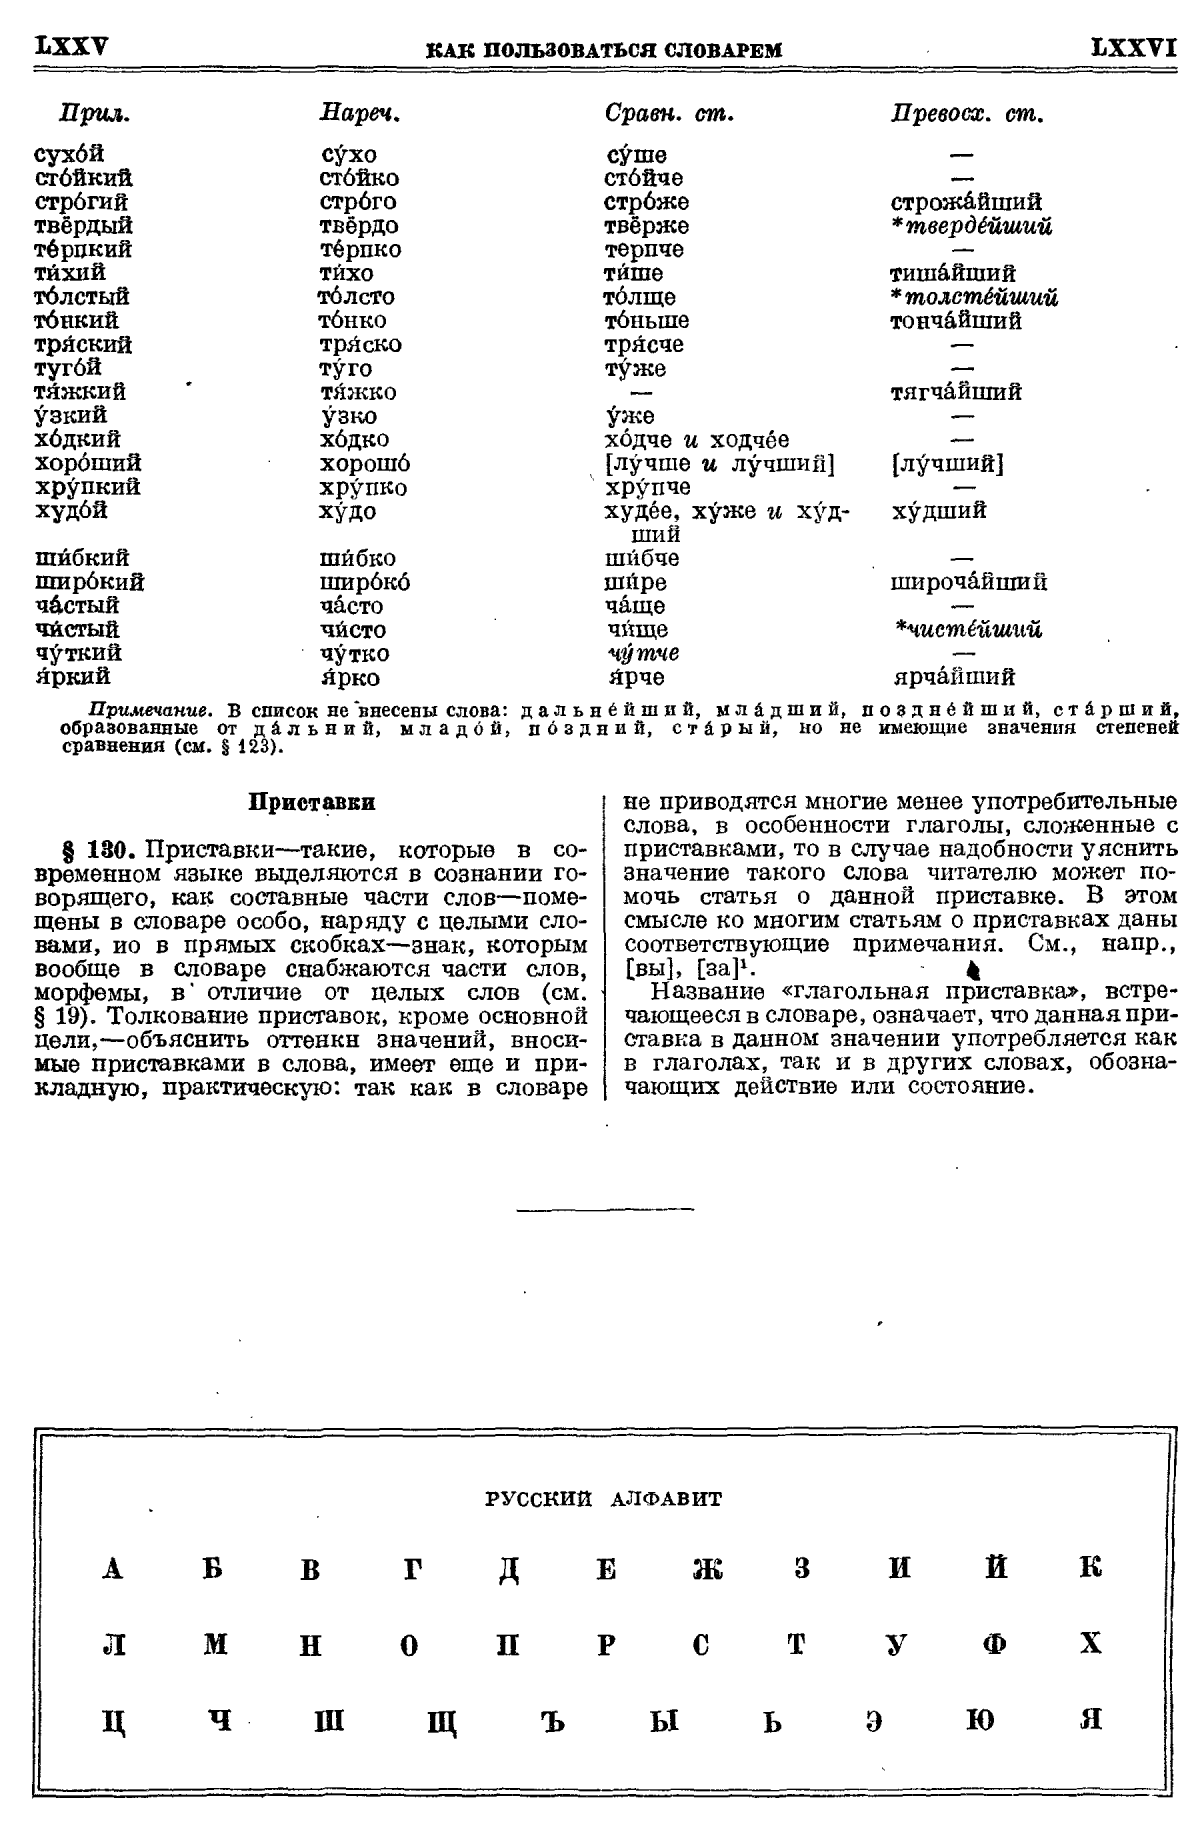 Фотокопия pdf / скан страницы 38 толкового словаря Ушакова (том 1)